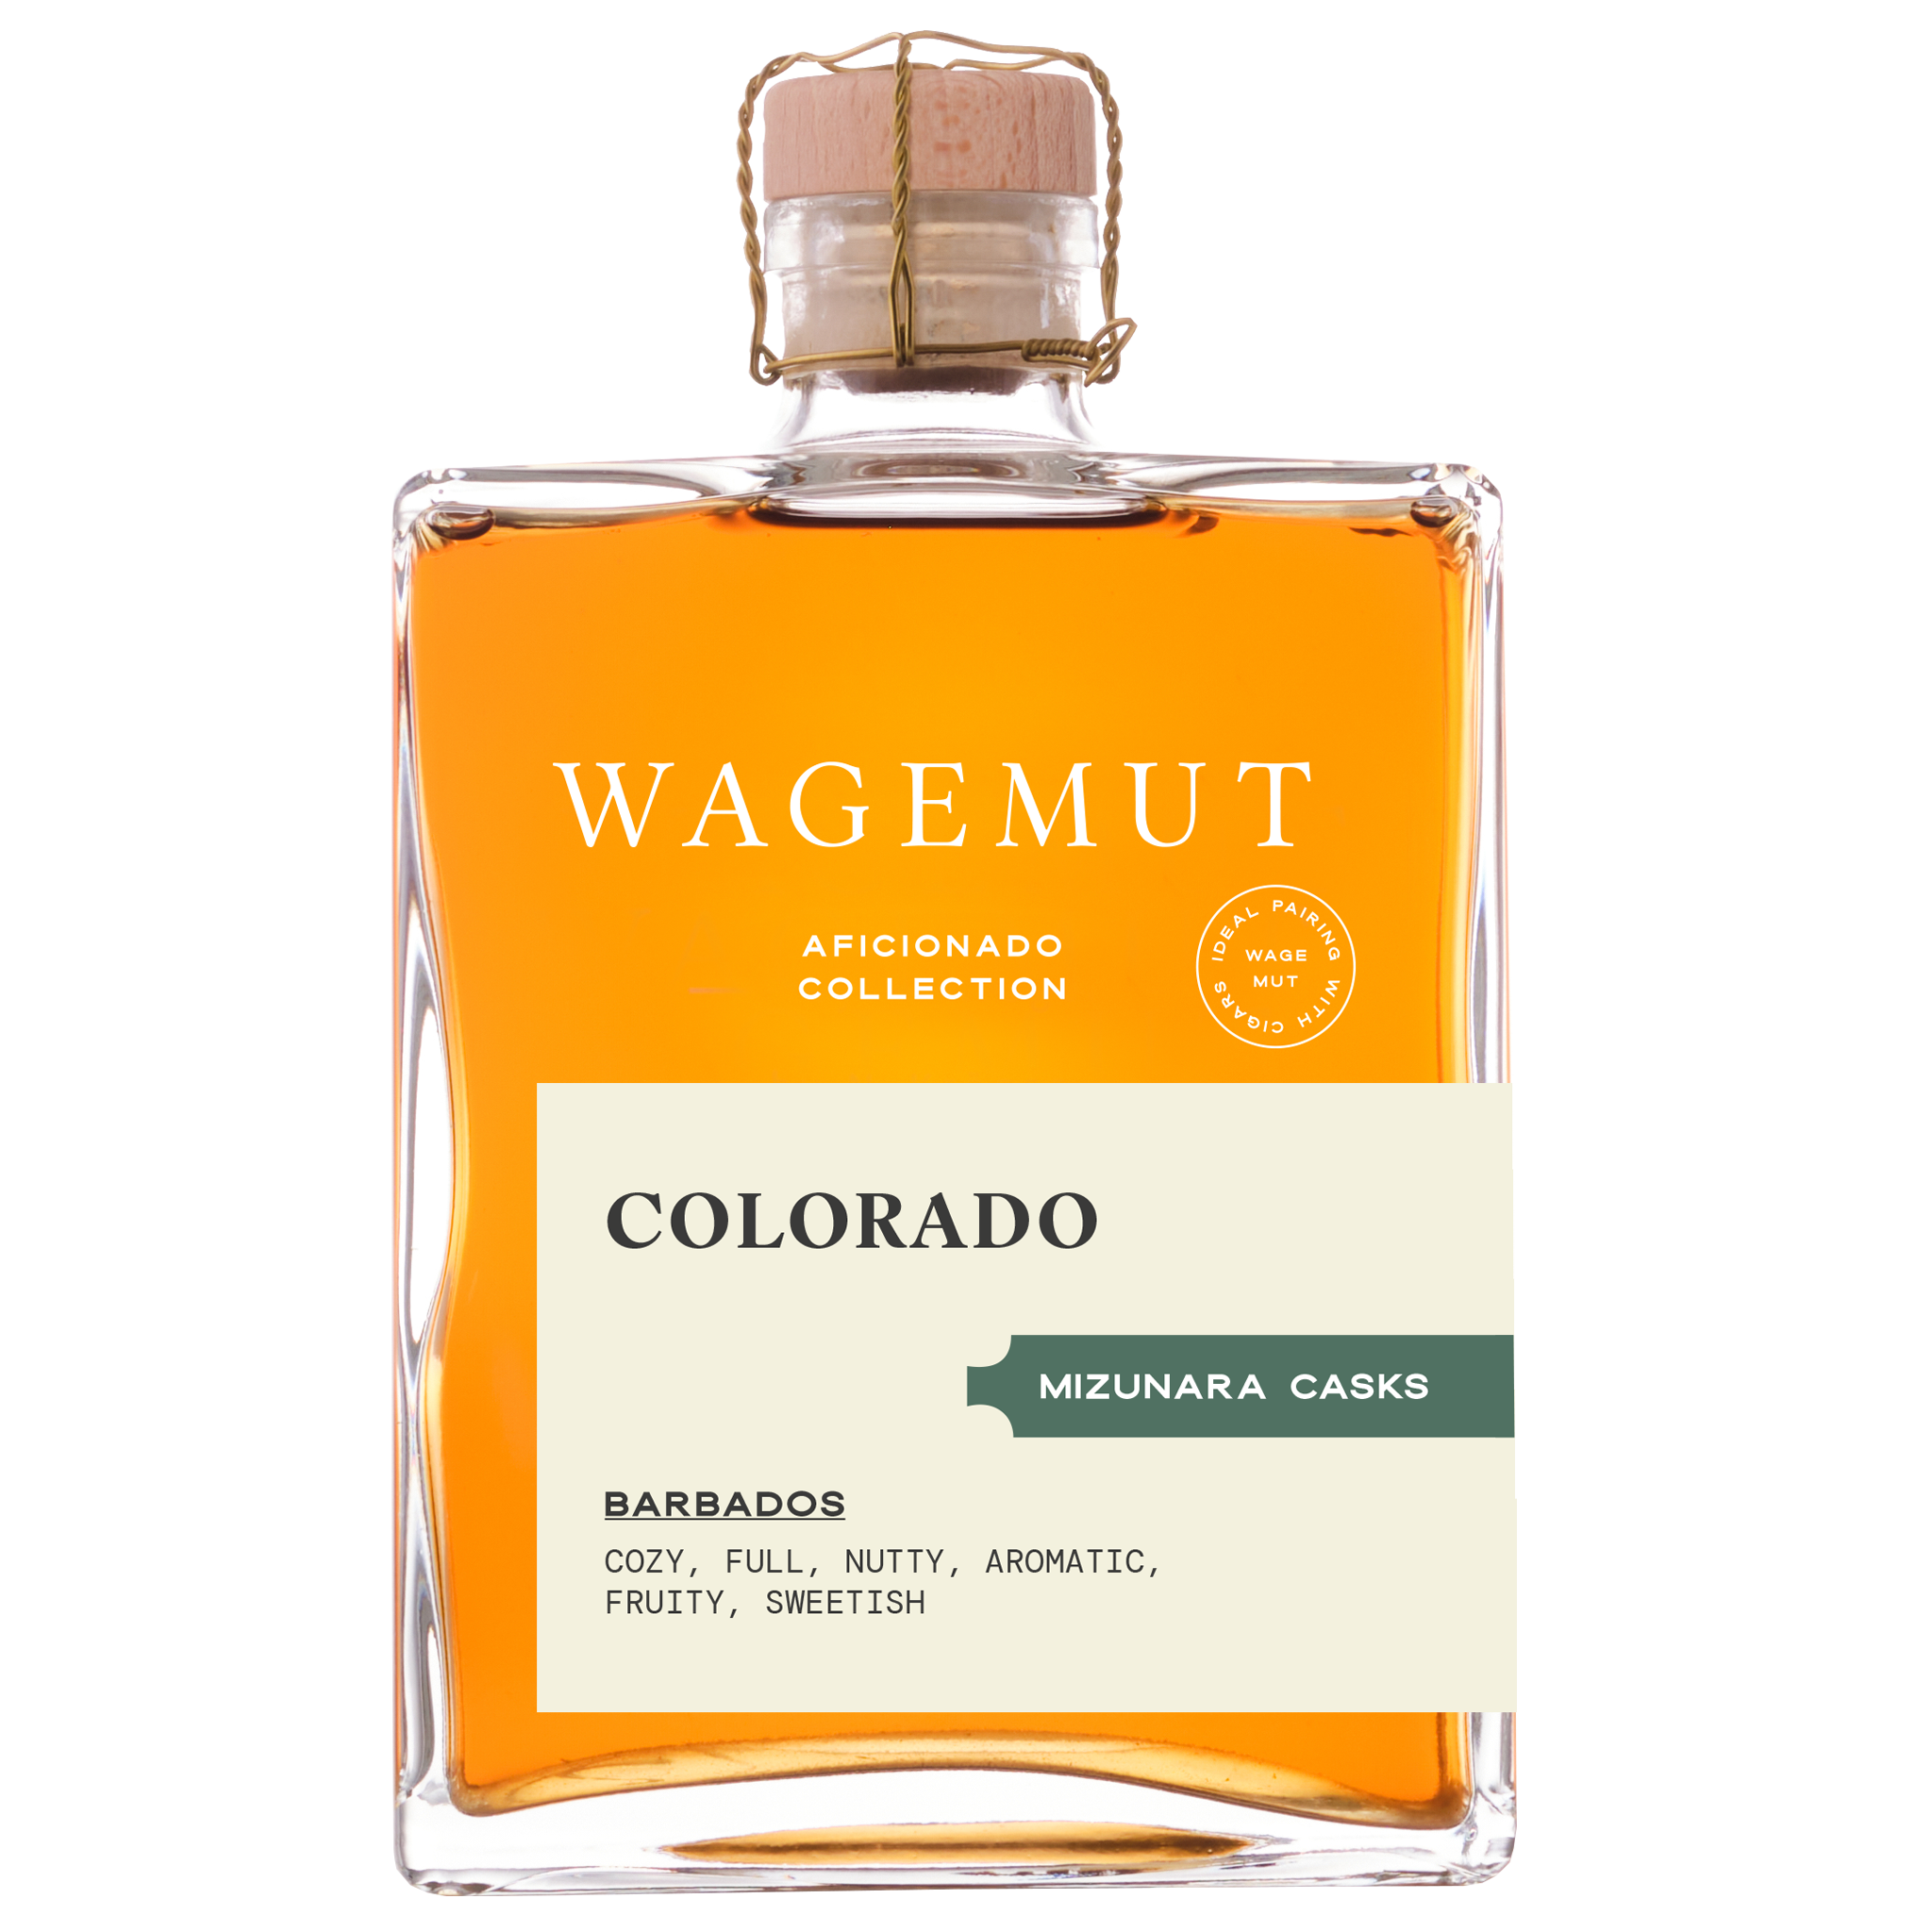 Wagemut Colorado (Aficionado Collection)